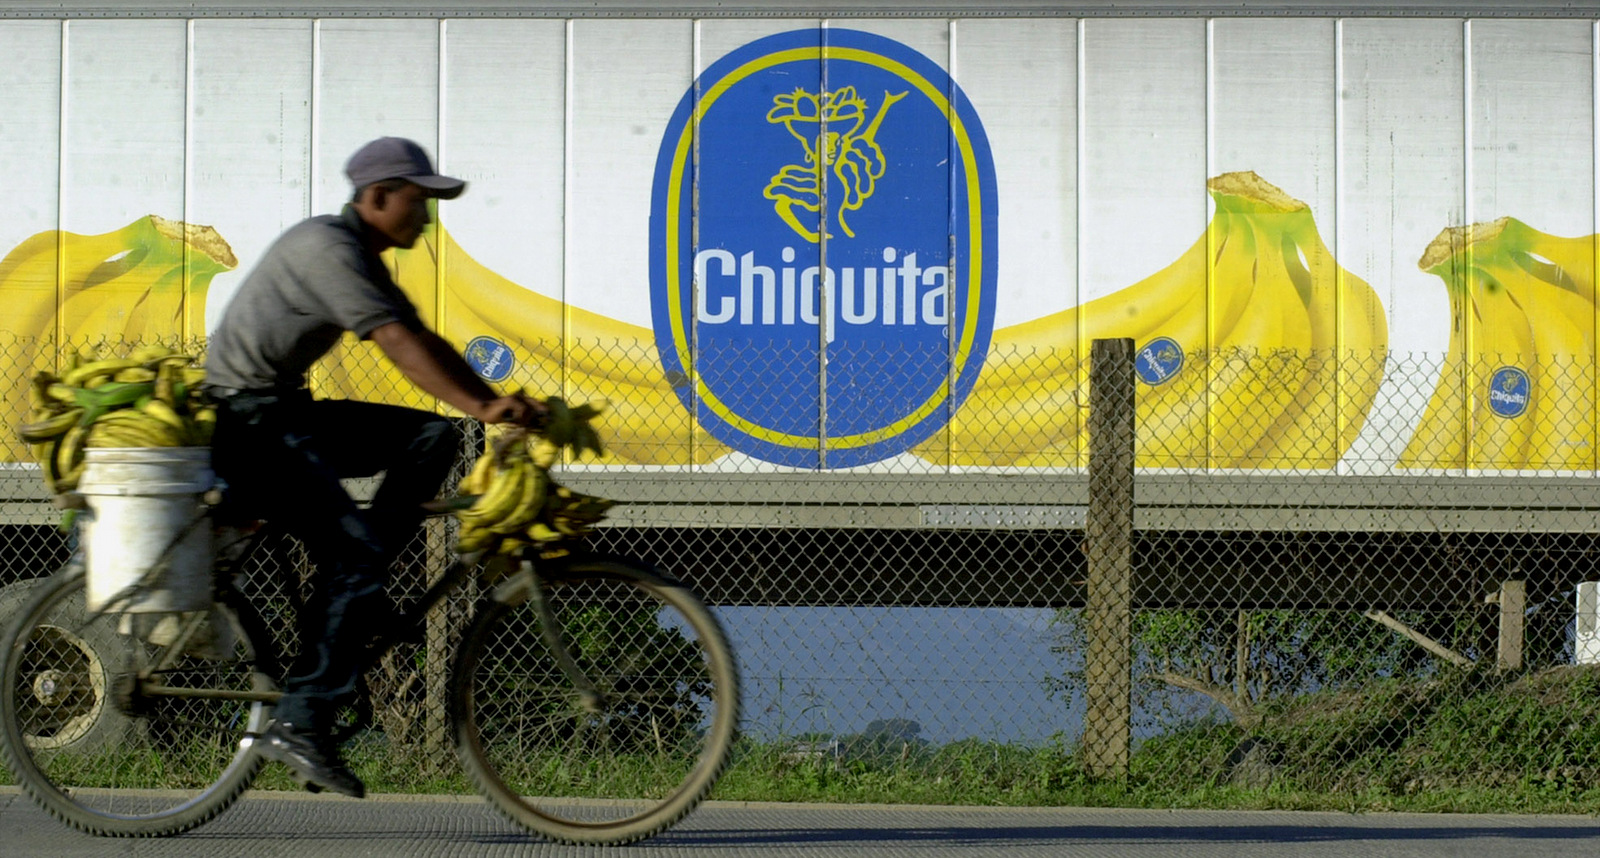 A man on a bicycle rides by a banana trailer in La Lima, Honduras Thursday Nov. 29, 2001. (AP/Esteban Felix)